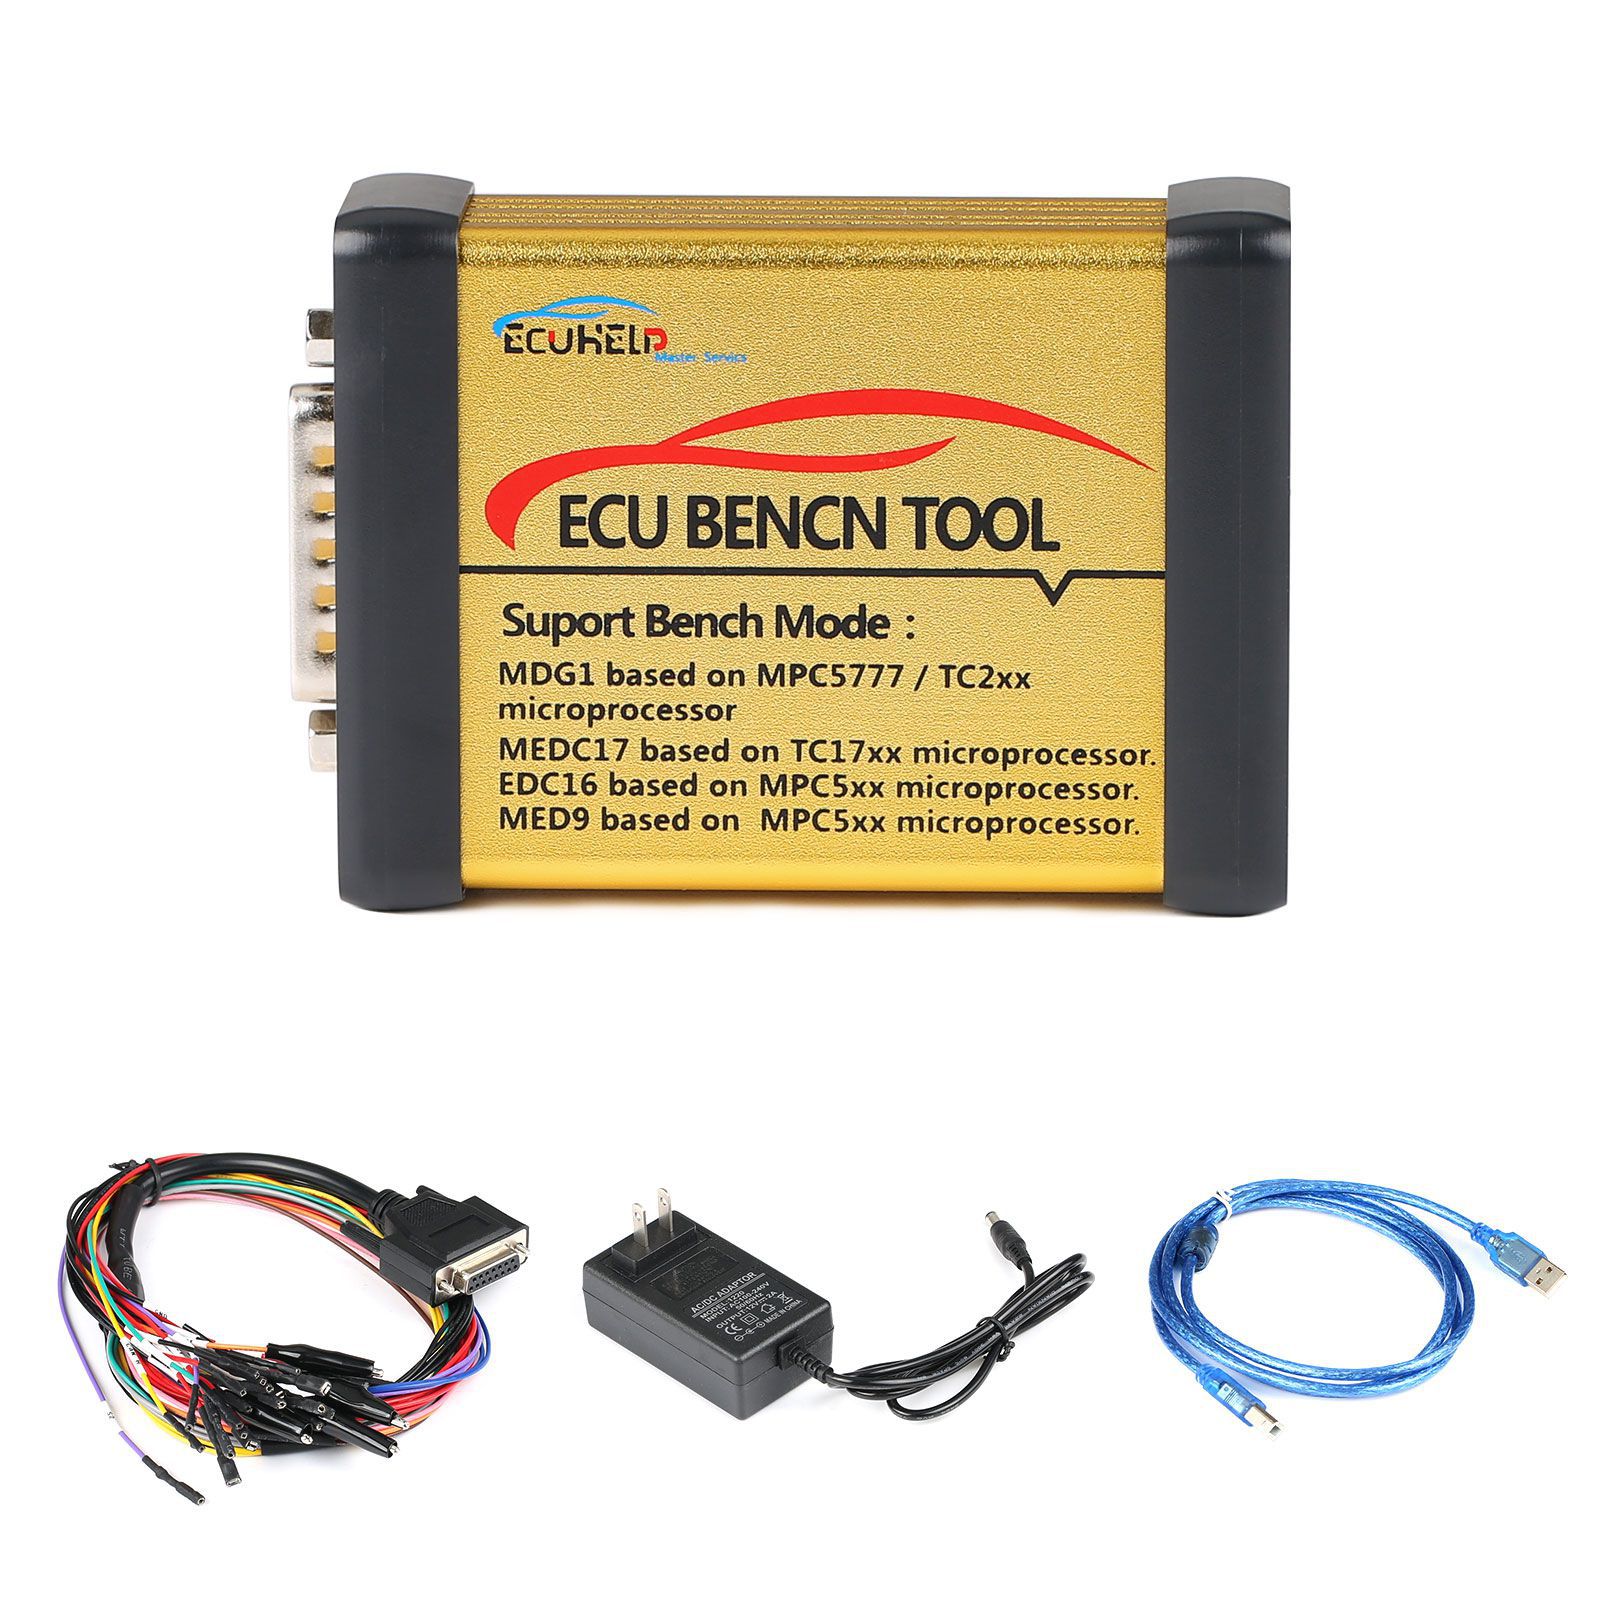 ECUHELP ECU Bench Tool Vollversion Unterstützung Bosch MEDC17/MDG1/EDC16 und VAG/VOLVO MED9